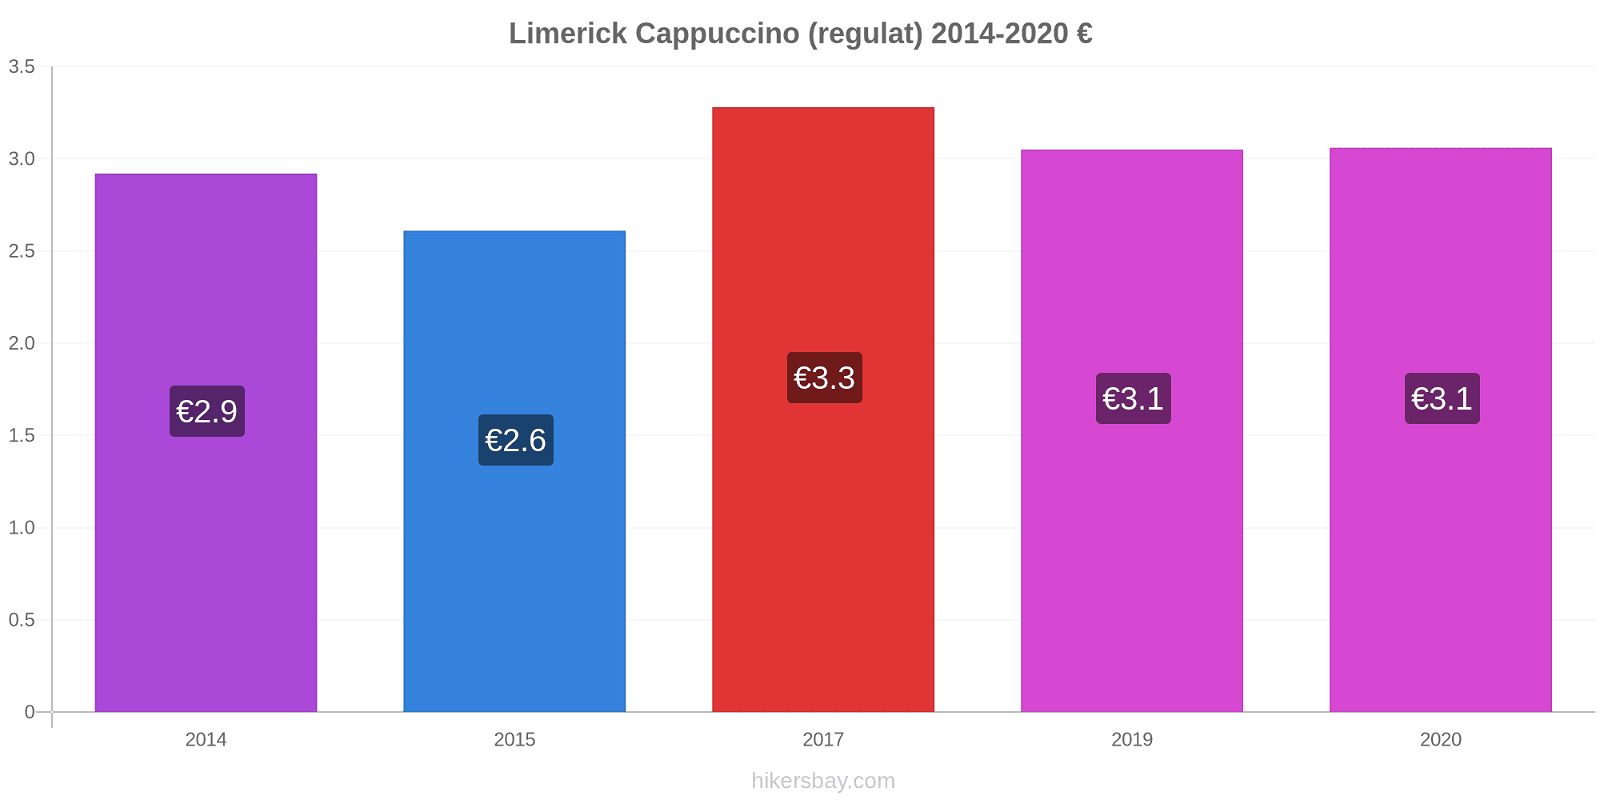 Limerick modificări de preț Cappuccino (regulat) hikersbay.com